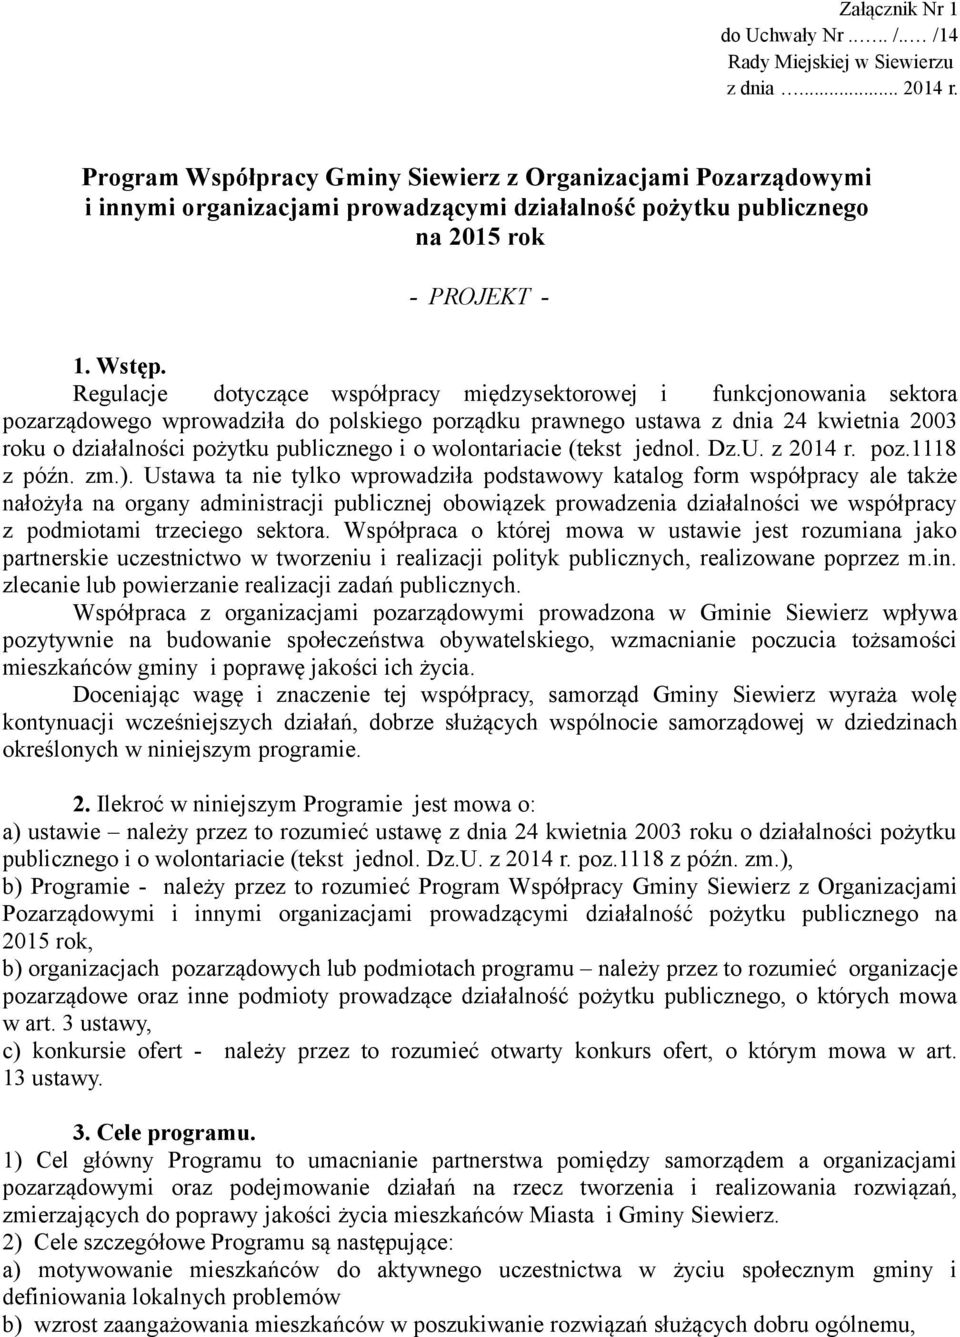 Regulacje dotyczące współpracy międzysektorowej i funkcjonowania sektora pozarządowego wprowadziła do polskiego porządku prawnego ustawa z dnia 24 kwietnia 2003 roku o działalności pożytku